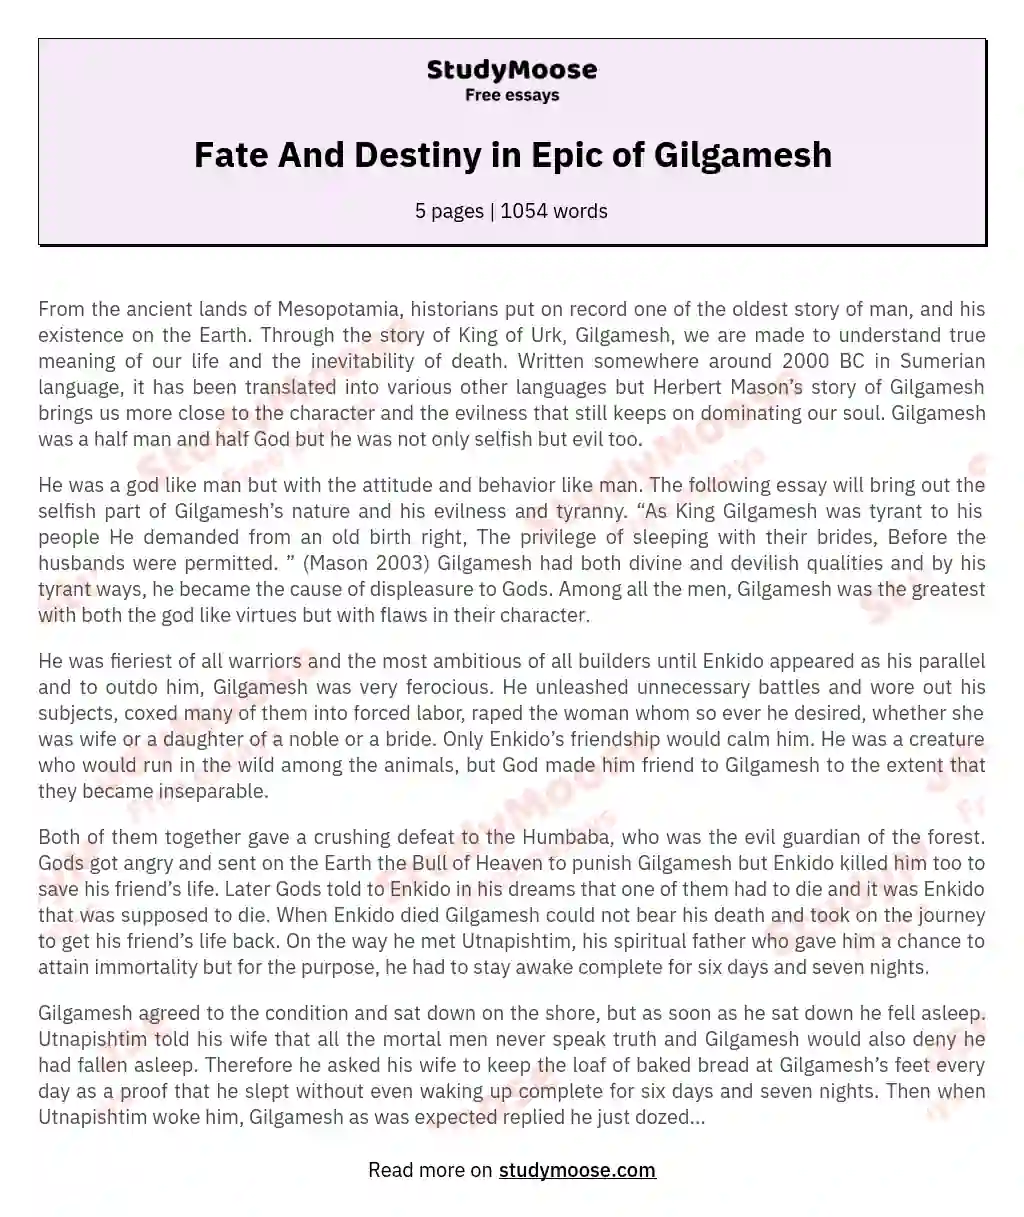 Fate And Destiny in Epic of Gilgamesh essay